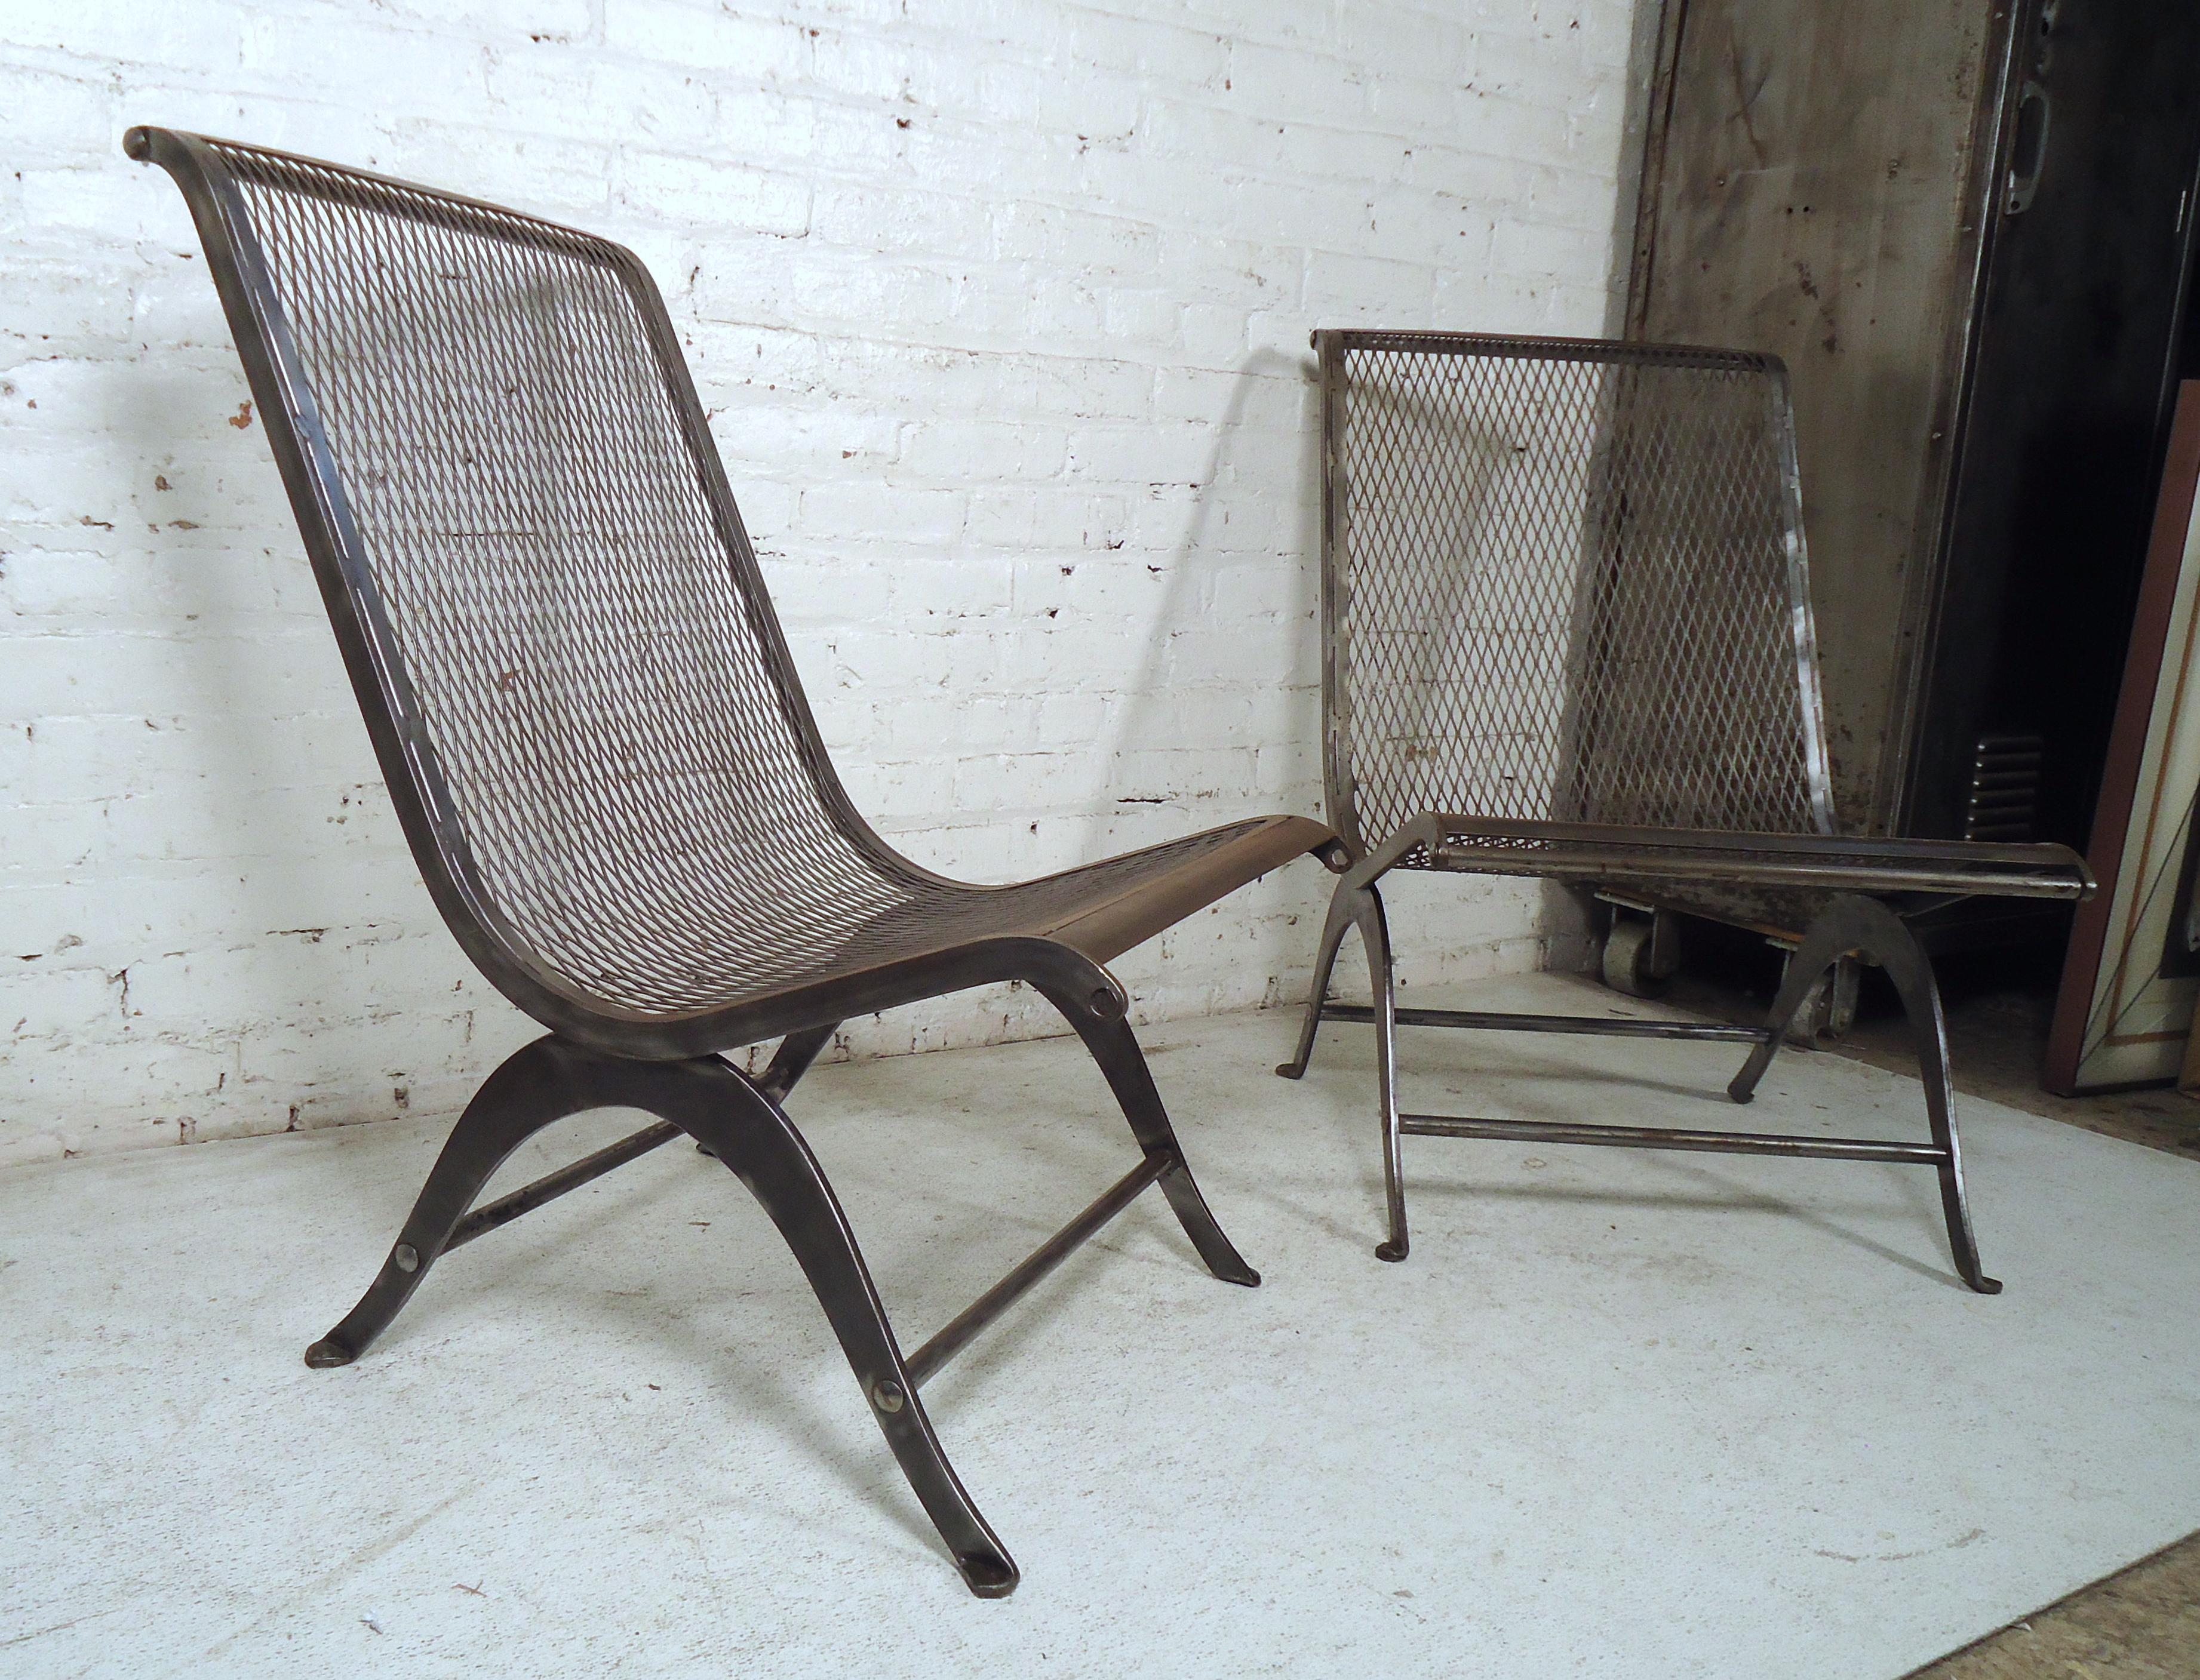 Pair of Vintage Industrial Chairs 1